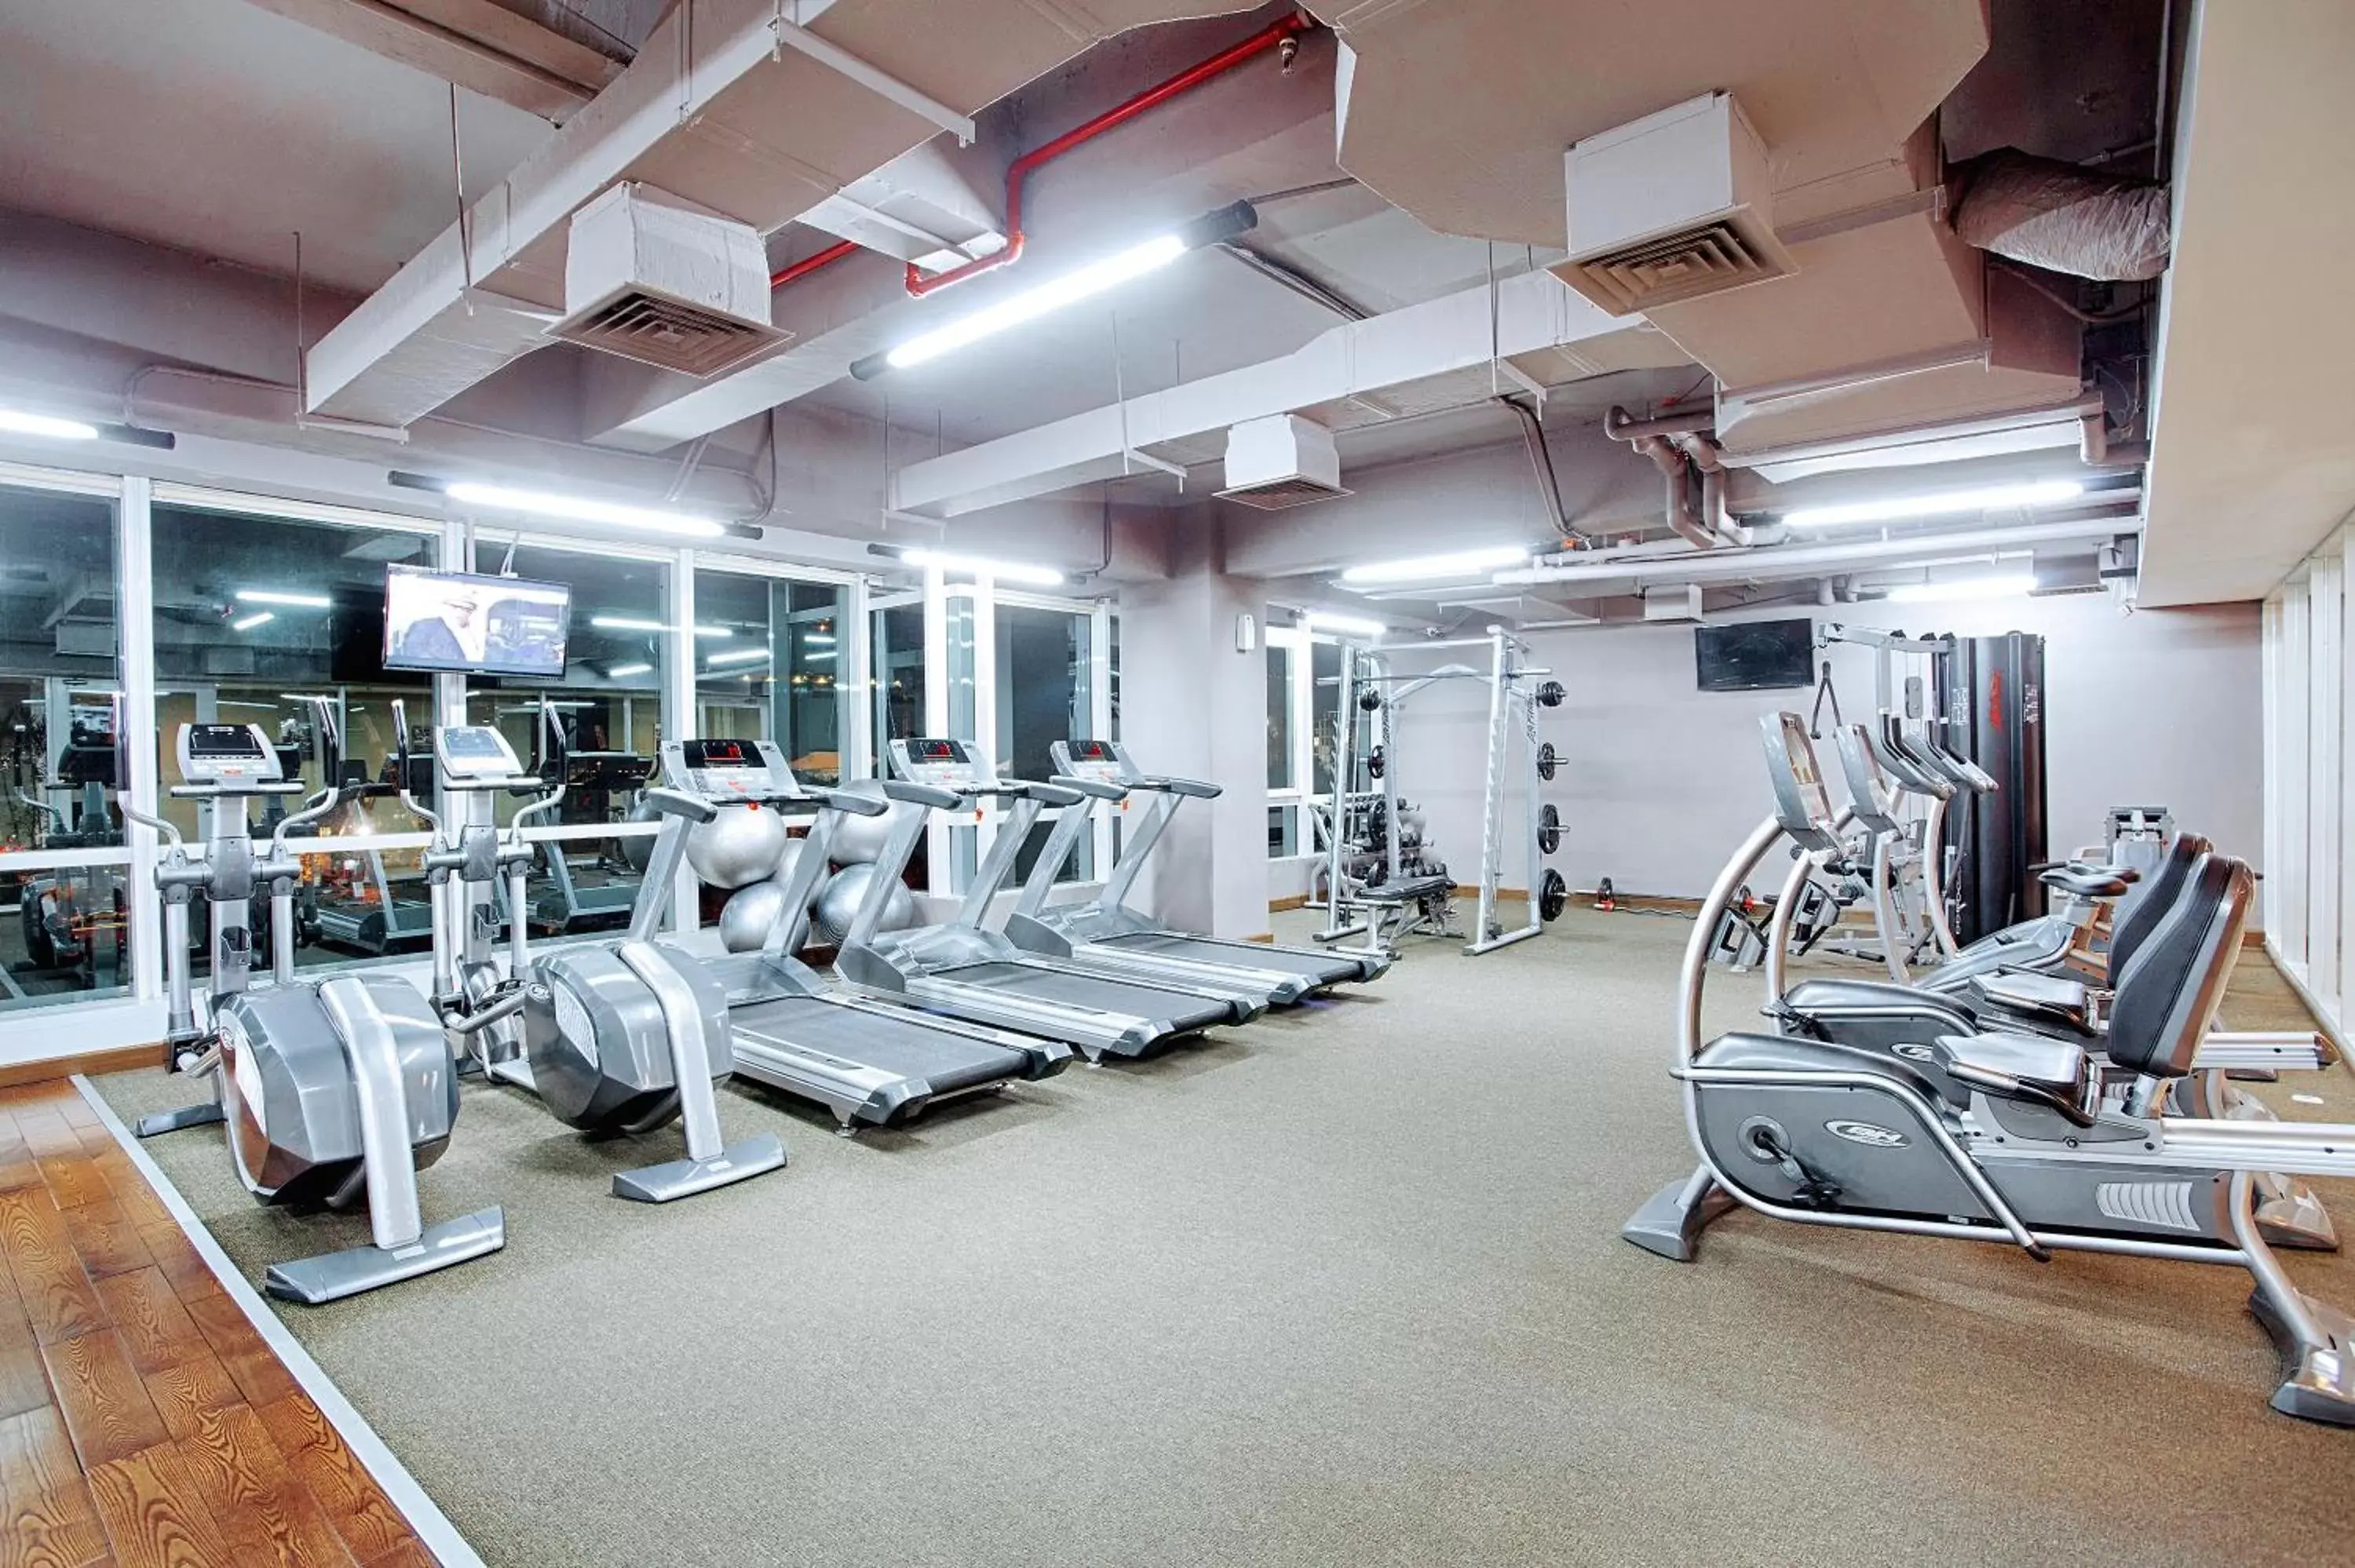 Fitness centre/facilities, Fitness Center/Facilities in The Alana Surabaya